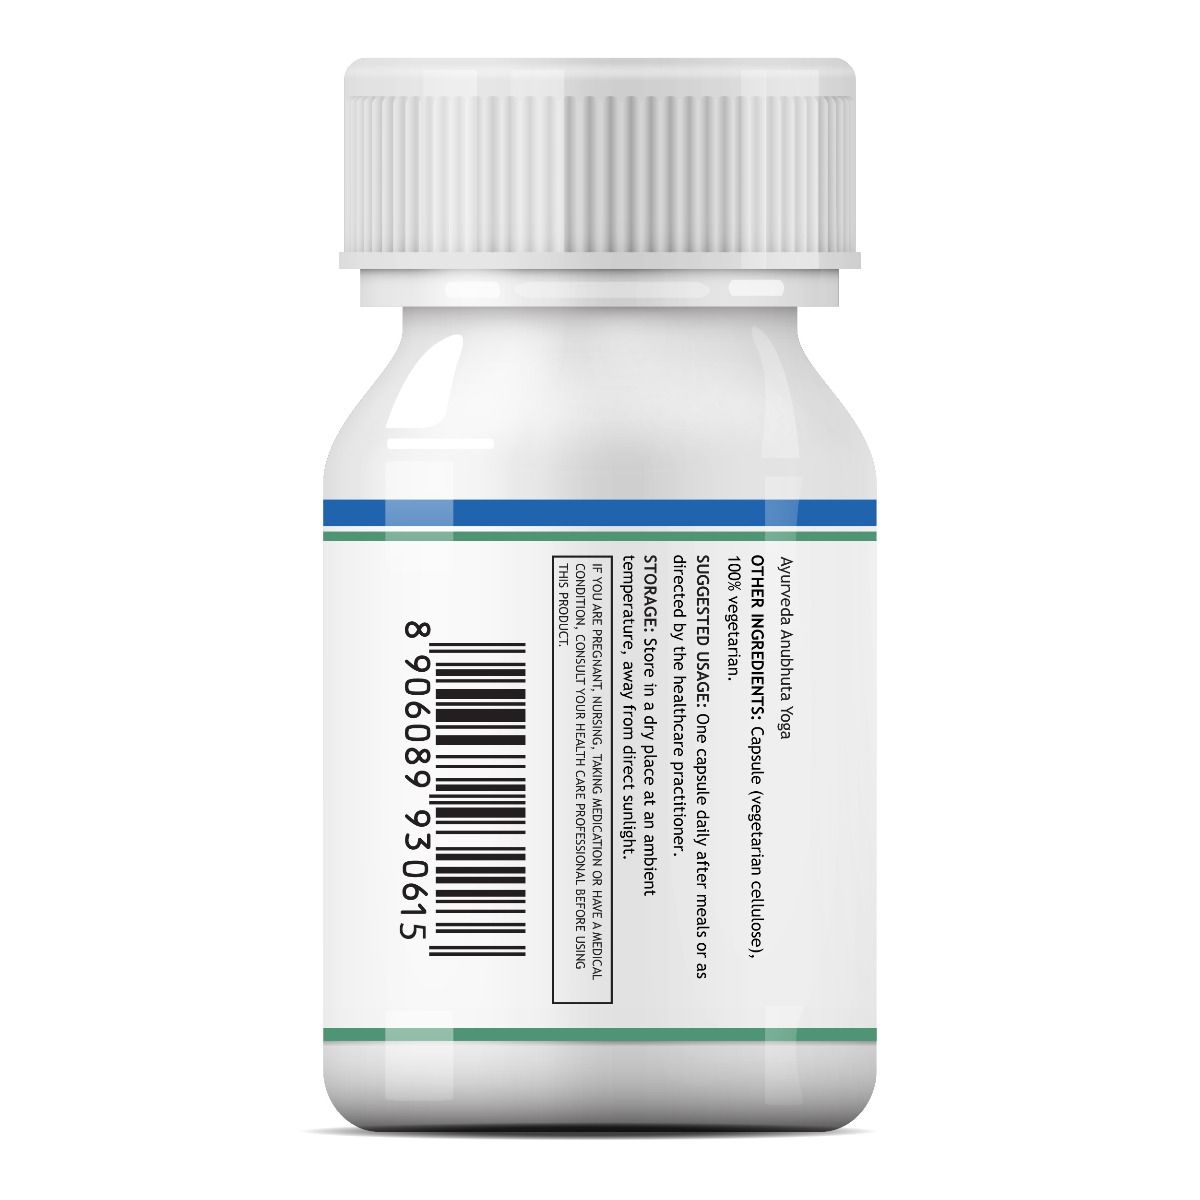 Inlife Natural Vitamin C Immunity Plus 500 mg, 60 Capsules, Pack of 1 